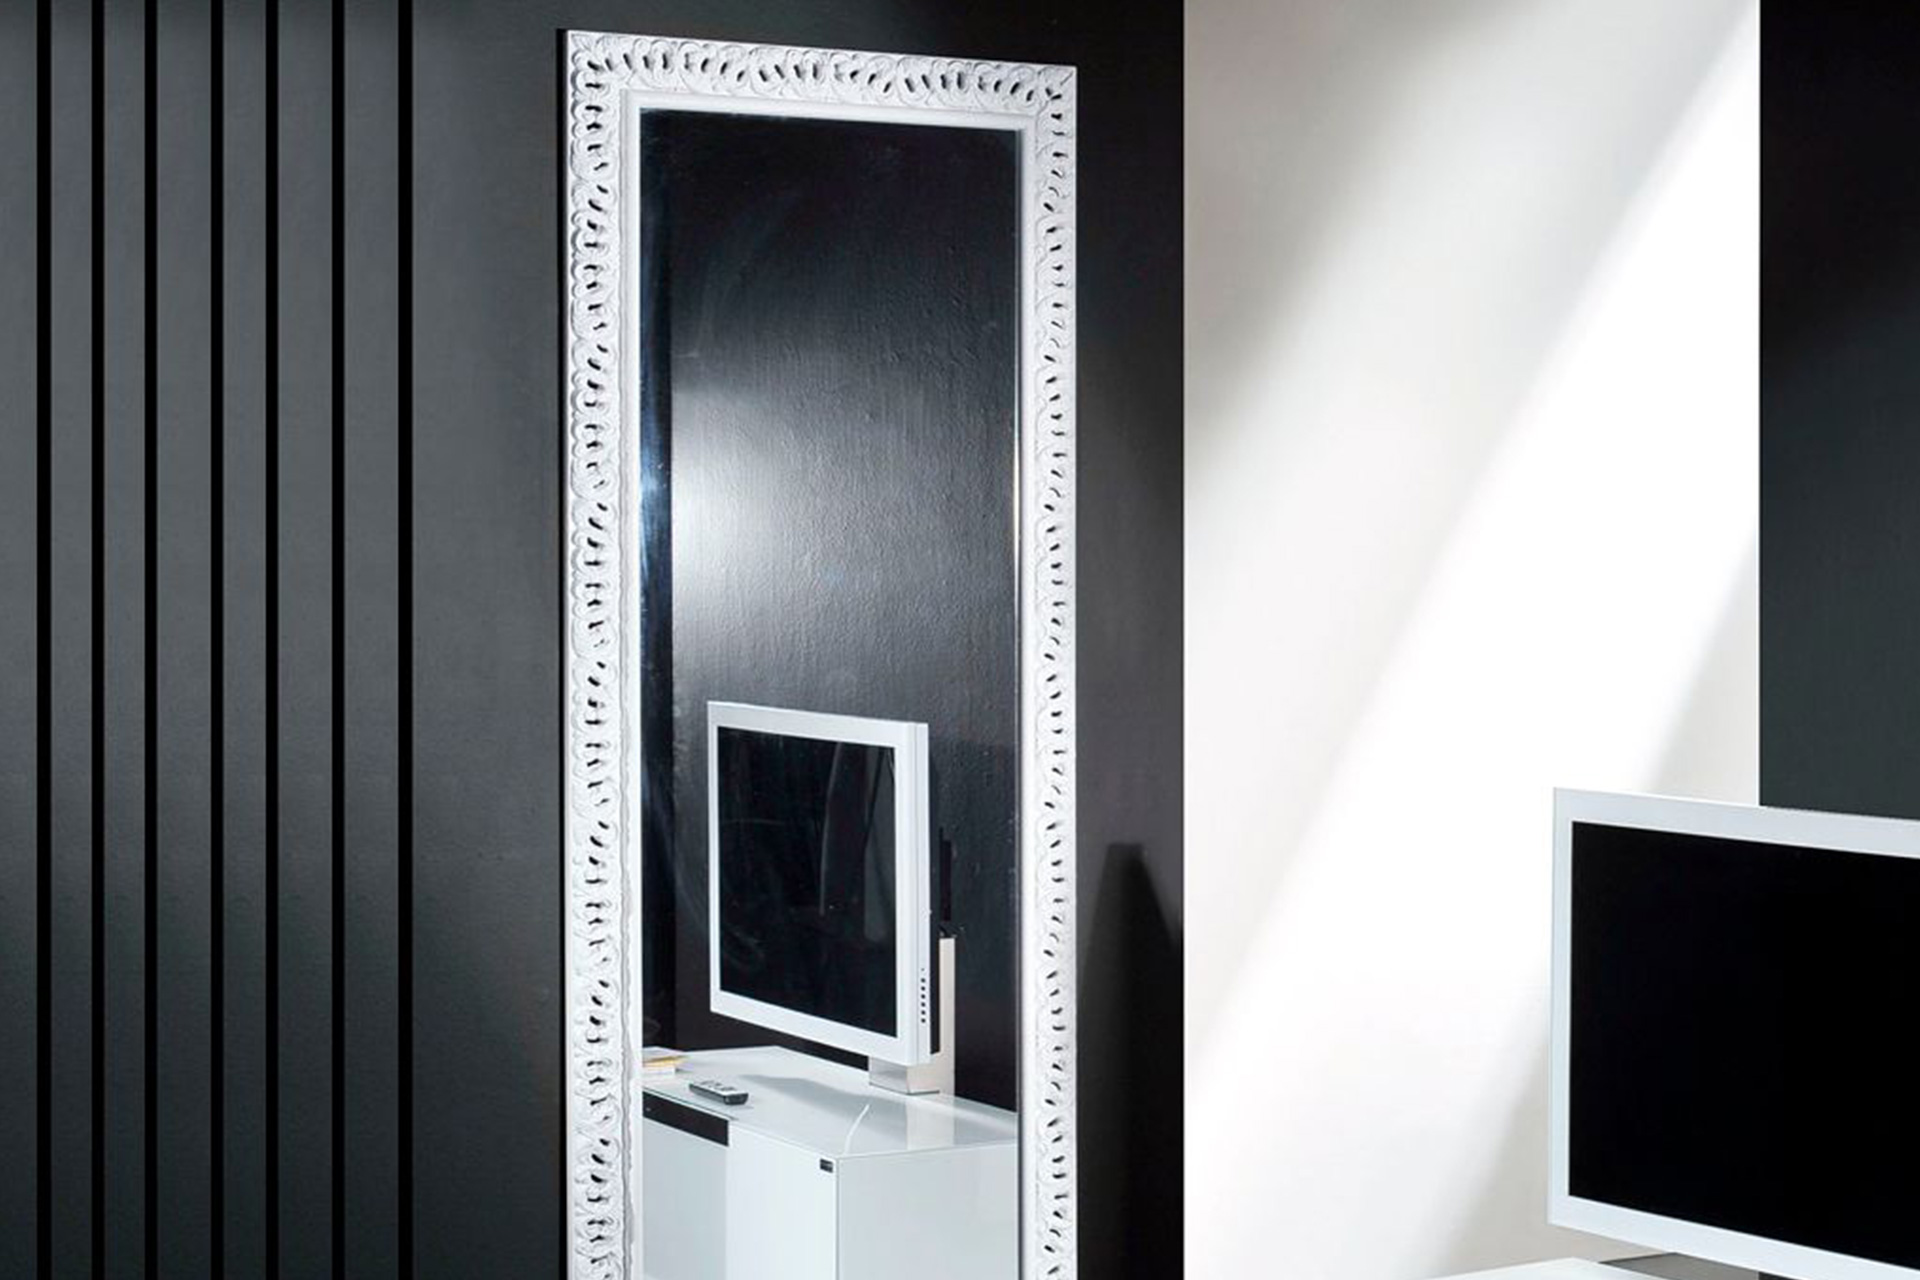 Modell Trent, rechteckig, Farbe: glänzend weiß lackiert, Herstellung: ASR-Rahmendesign Material: Holz, Spiegel glatt, Frontansicht an der Wand